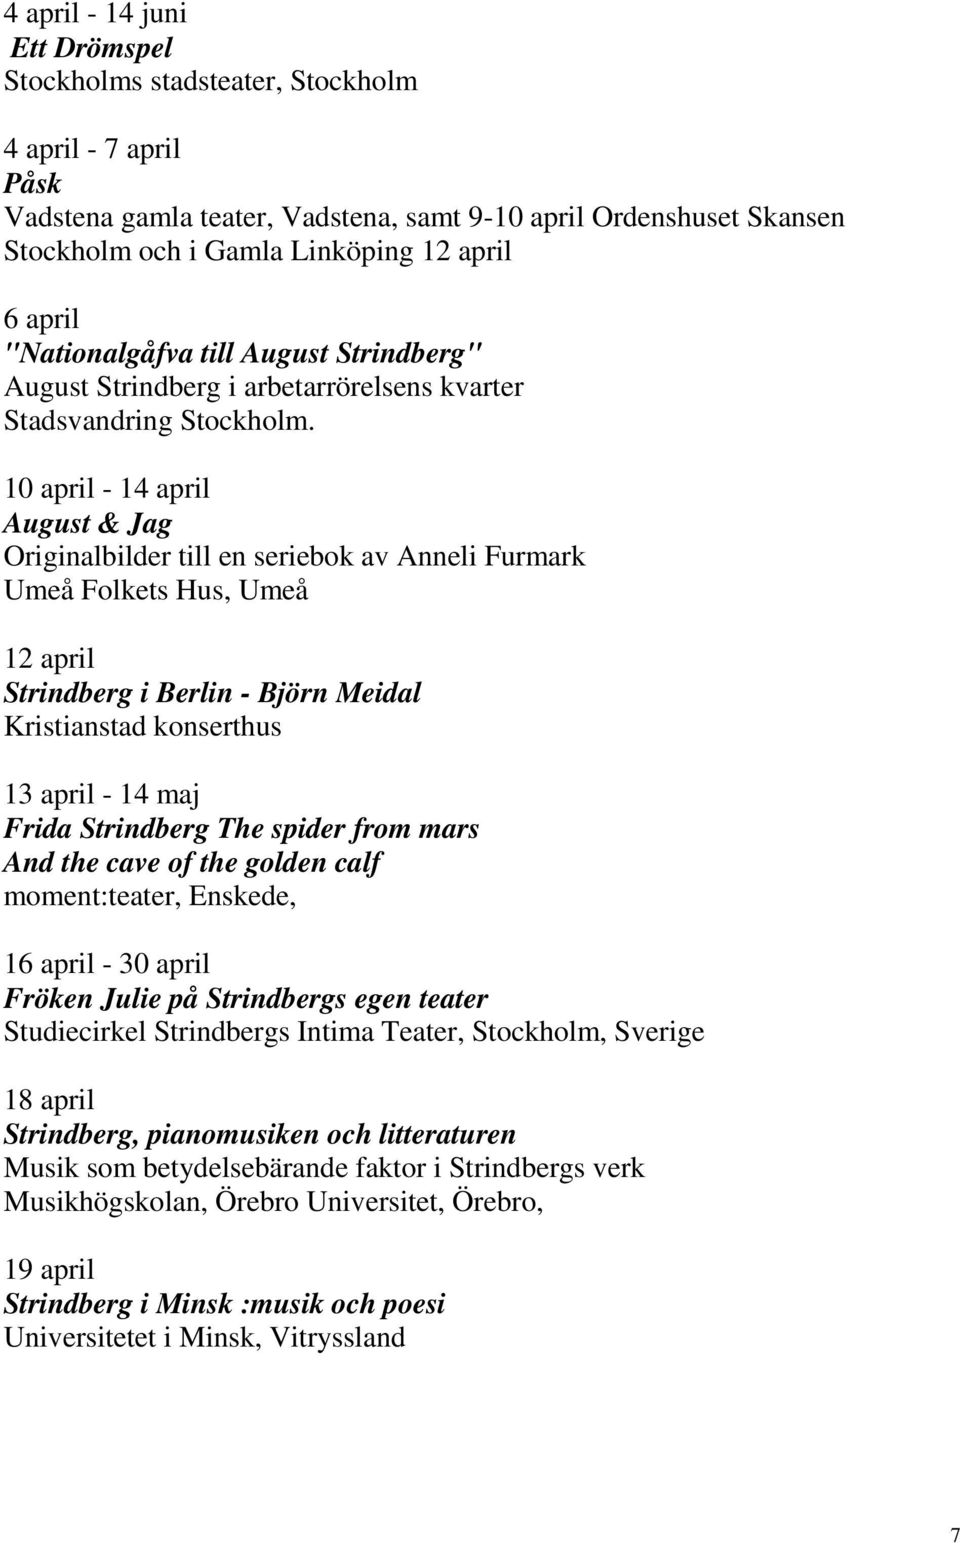 10 april - 14 april August & Jag Originalbilder till en seriebok av Anneli Furmark Umeå Folkets Hus, Umeå 12 april Strindberg i Berlin - Björn Meidal Kristianstad konserthus 13 april - 14 maj Frida